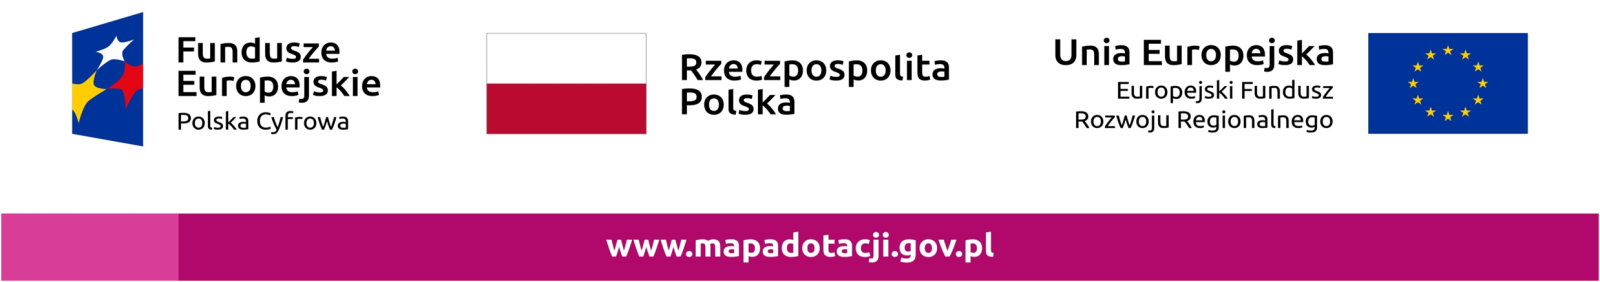 Logo Funduszy Europejskich Rzeczpospolitej polskiej Unii Europejskiej